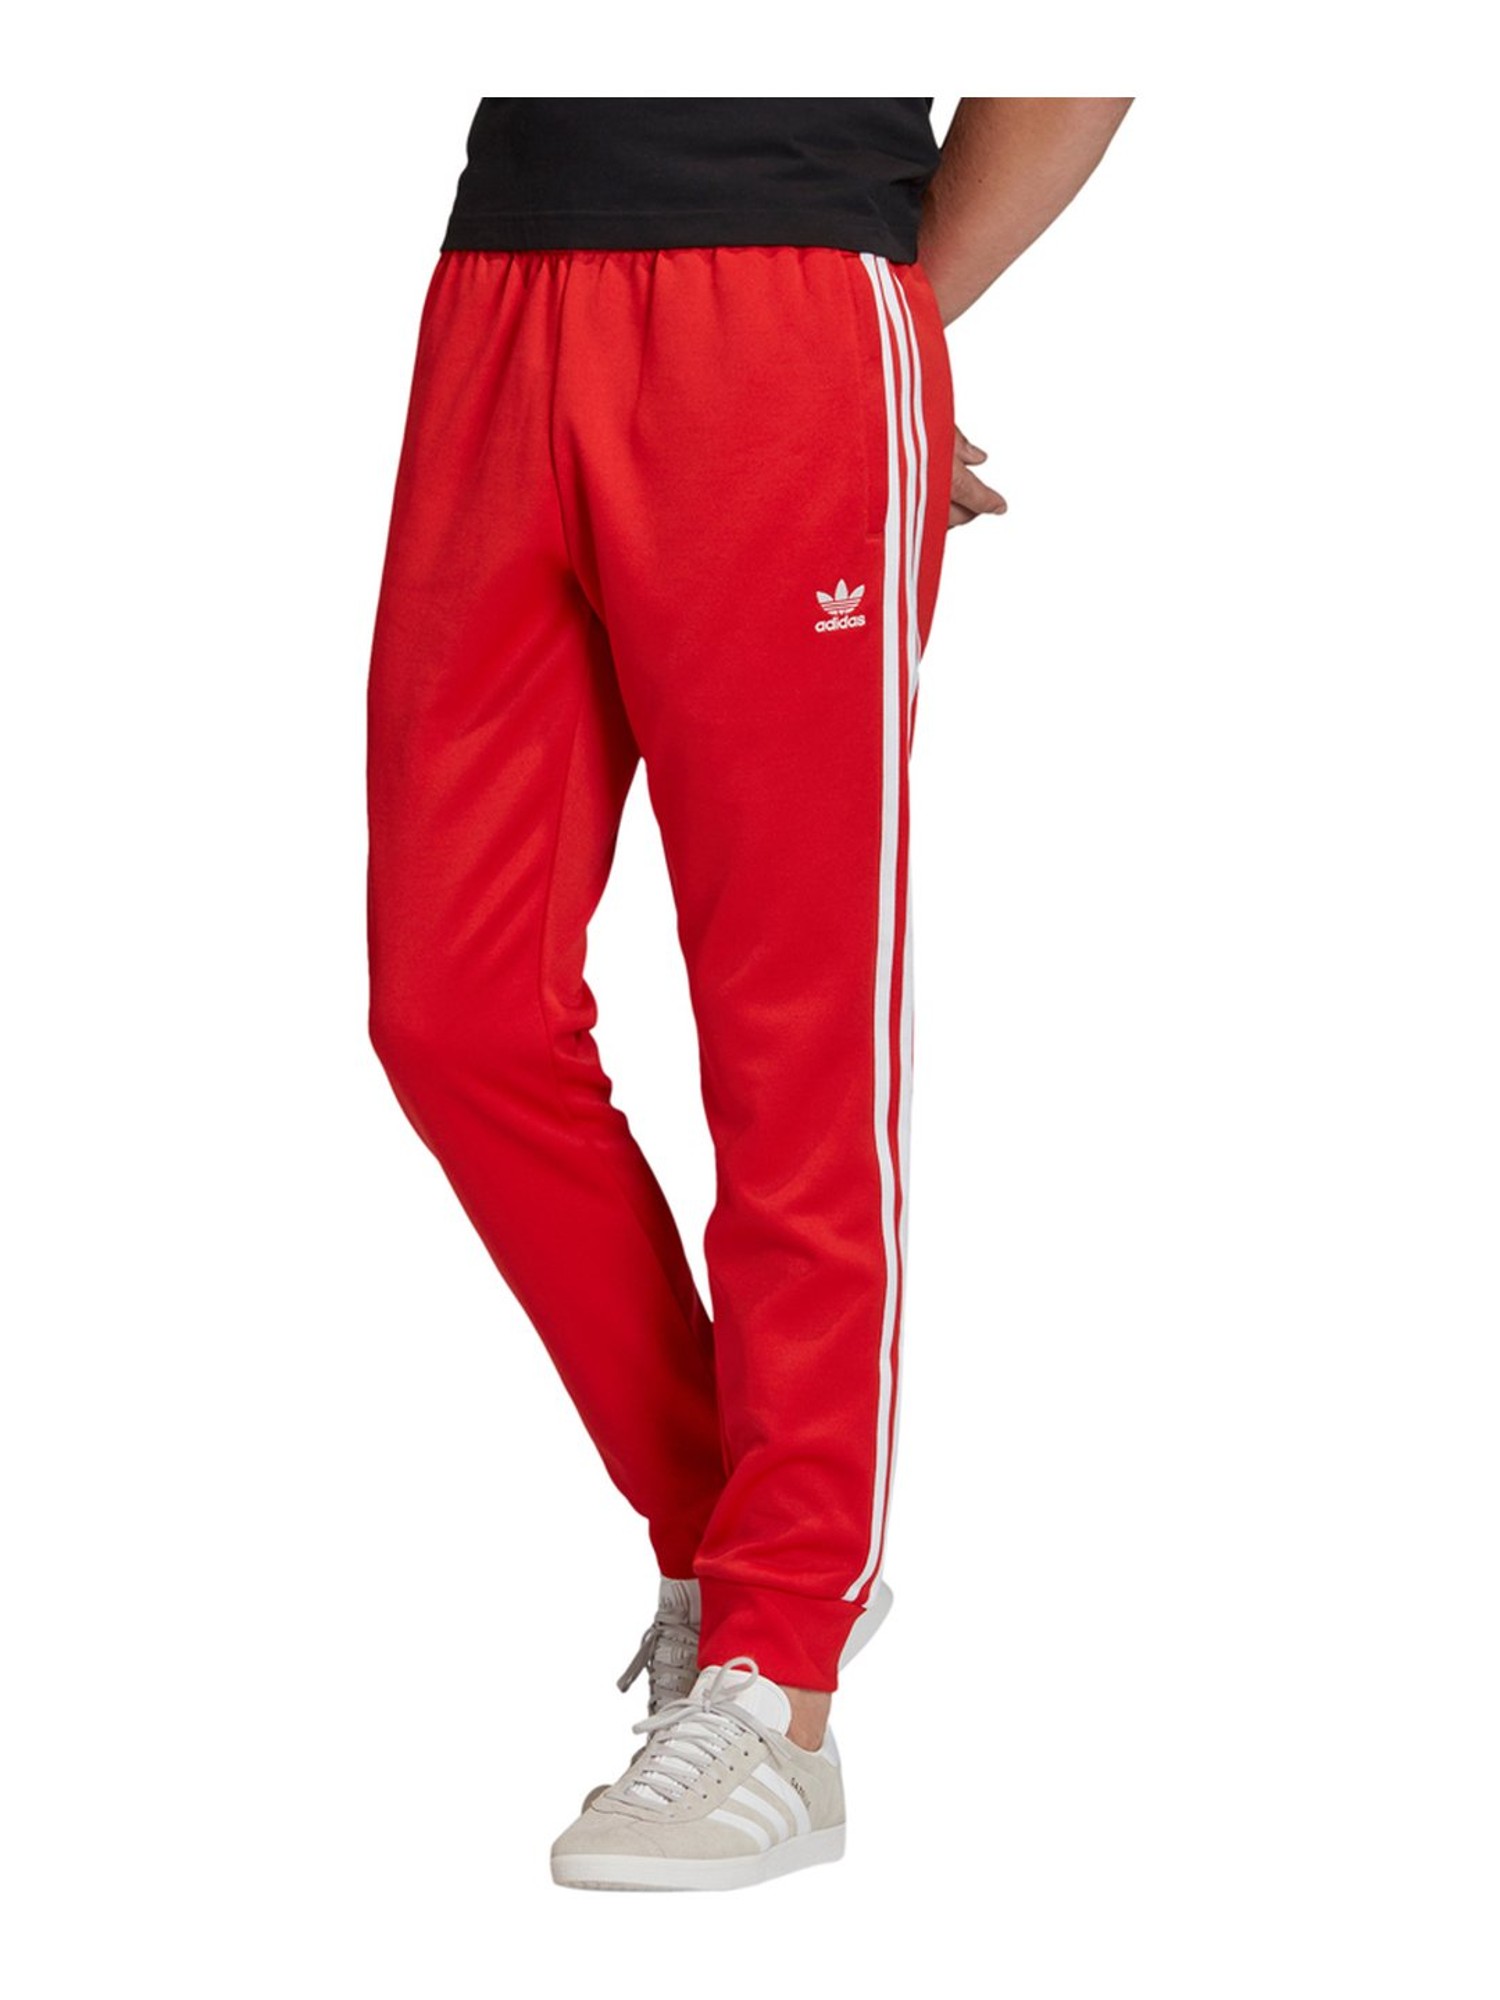 ADIDAS ORIGINALS Essentials Joggers, Red Men's Athletic Pant